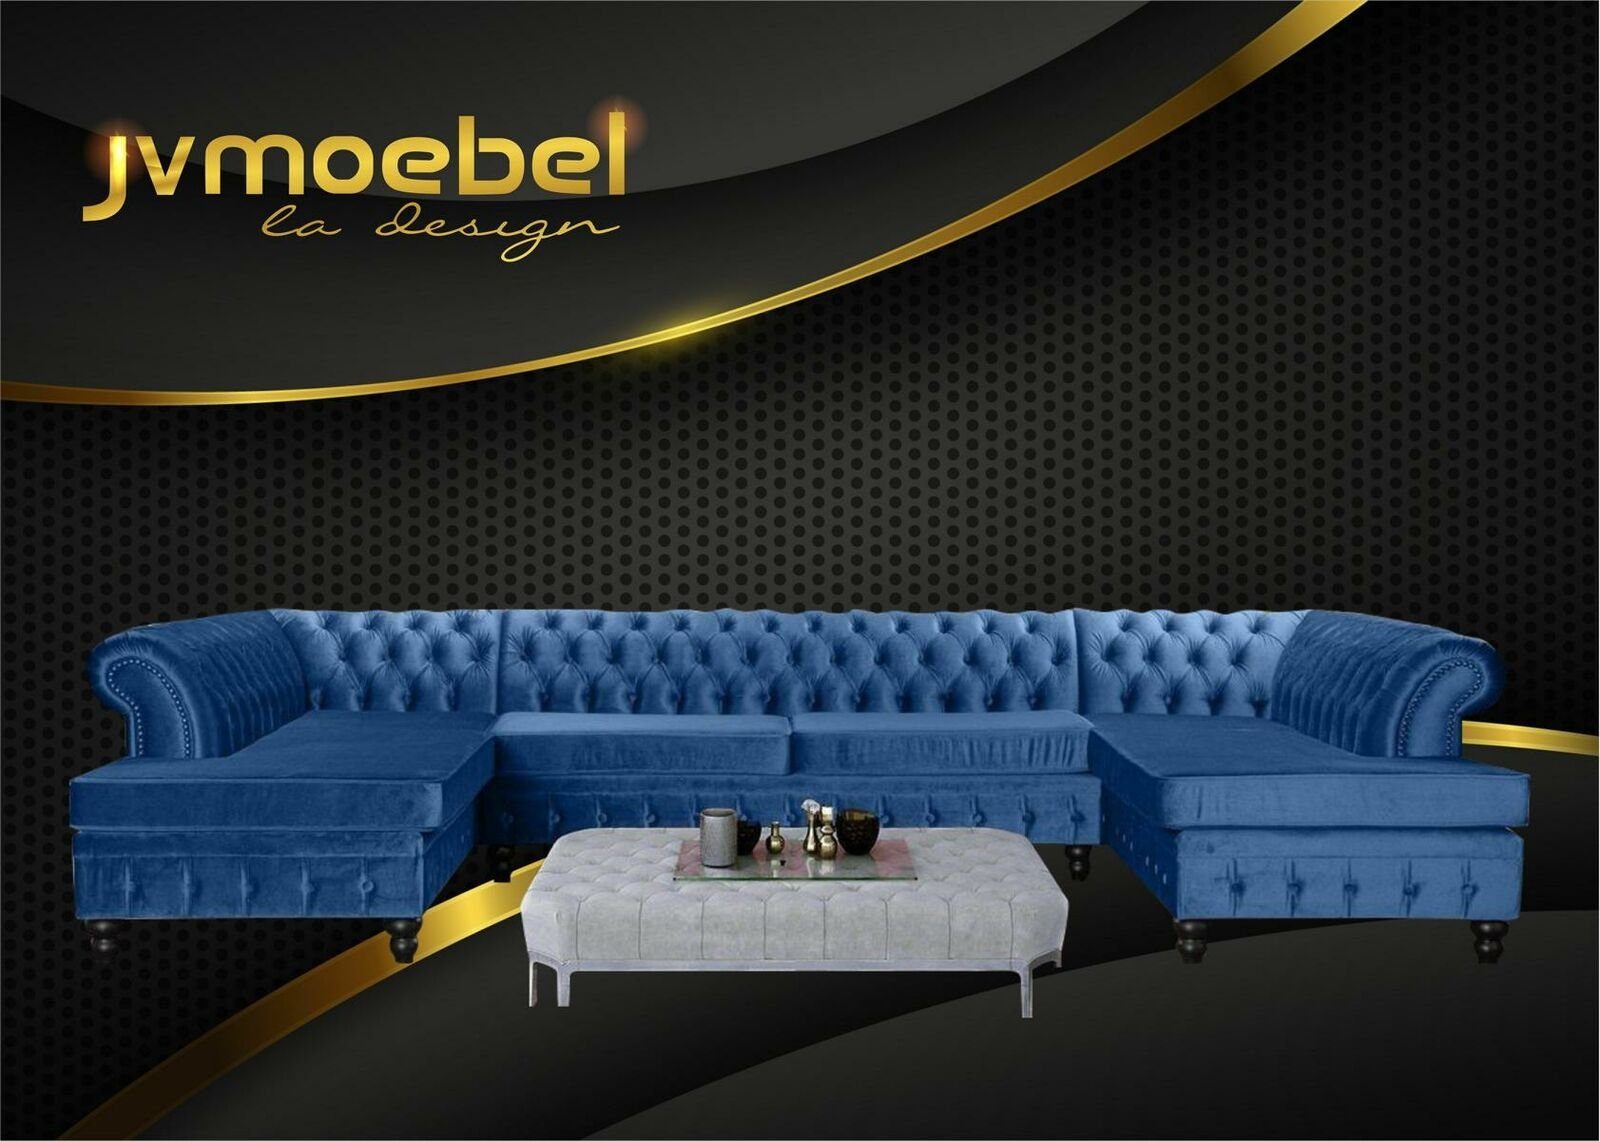 JVmoebel Ecksofa, Set Luxury Modern und Couchtisch Blau/Hellgrau Ecksofa U-Form Chesterfield